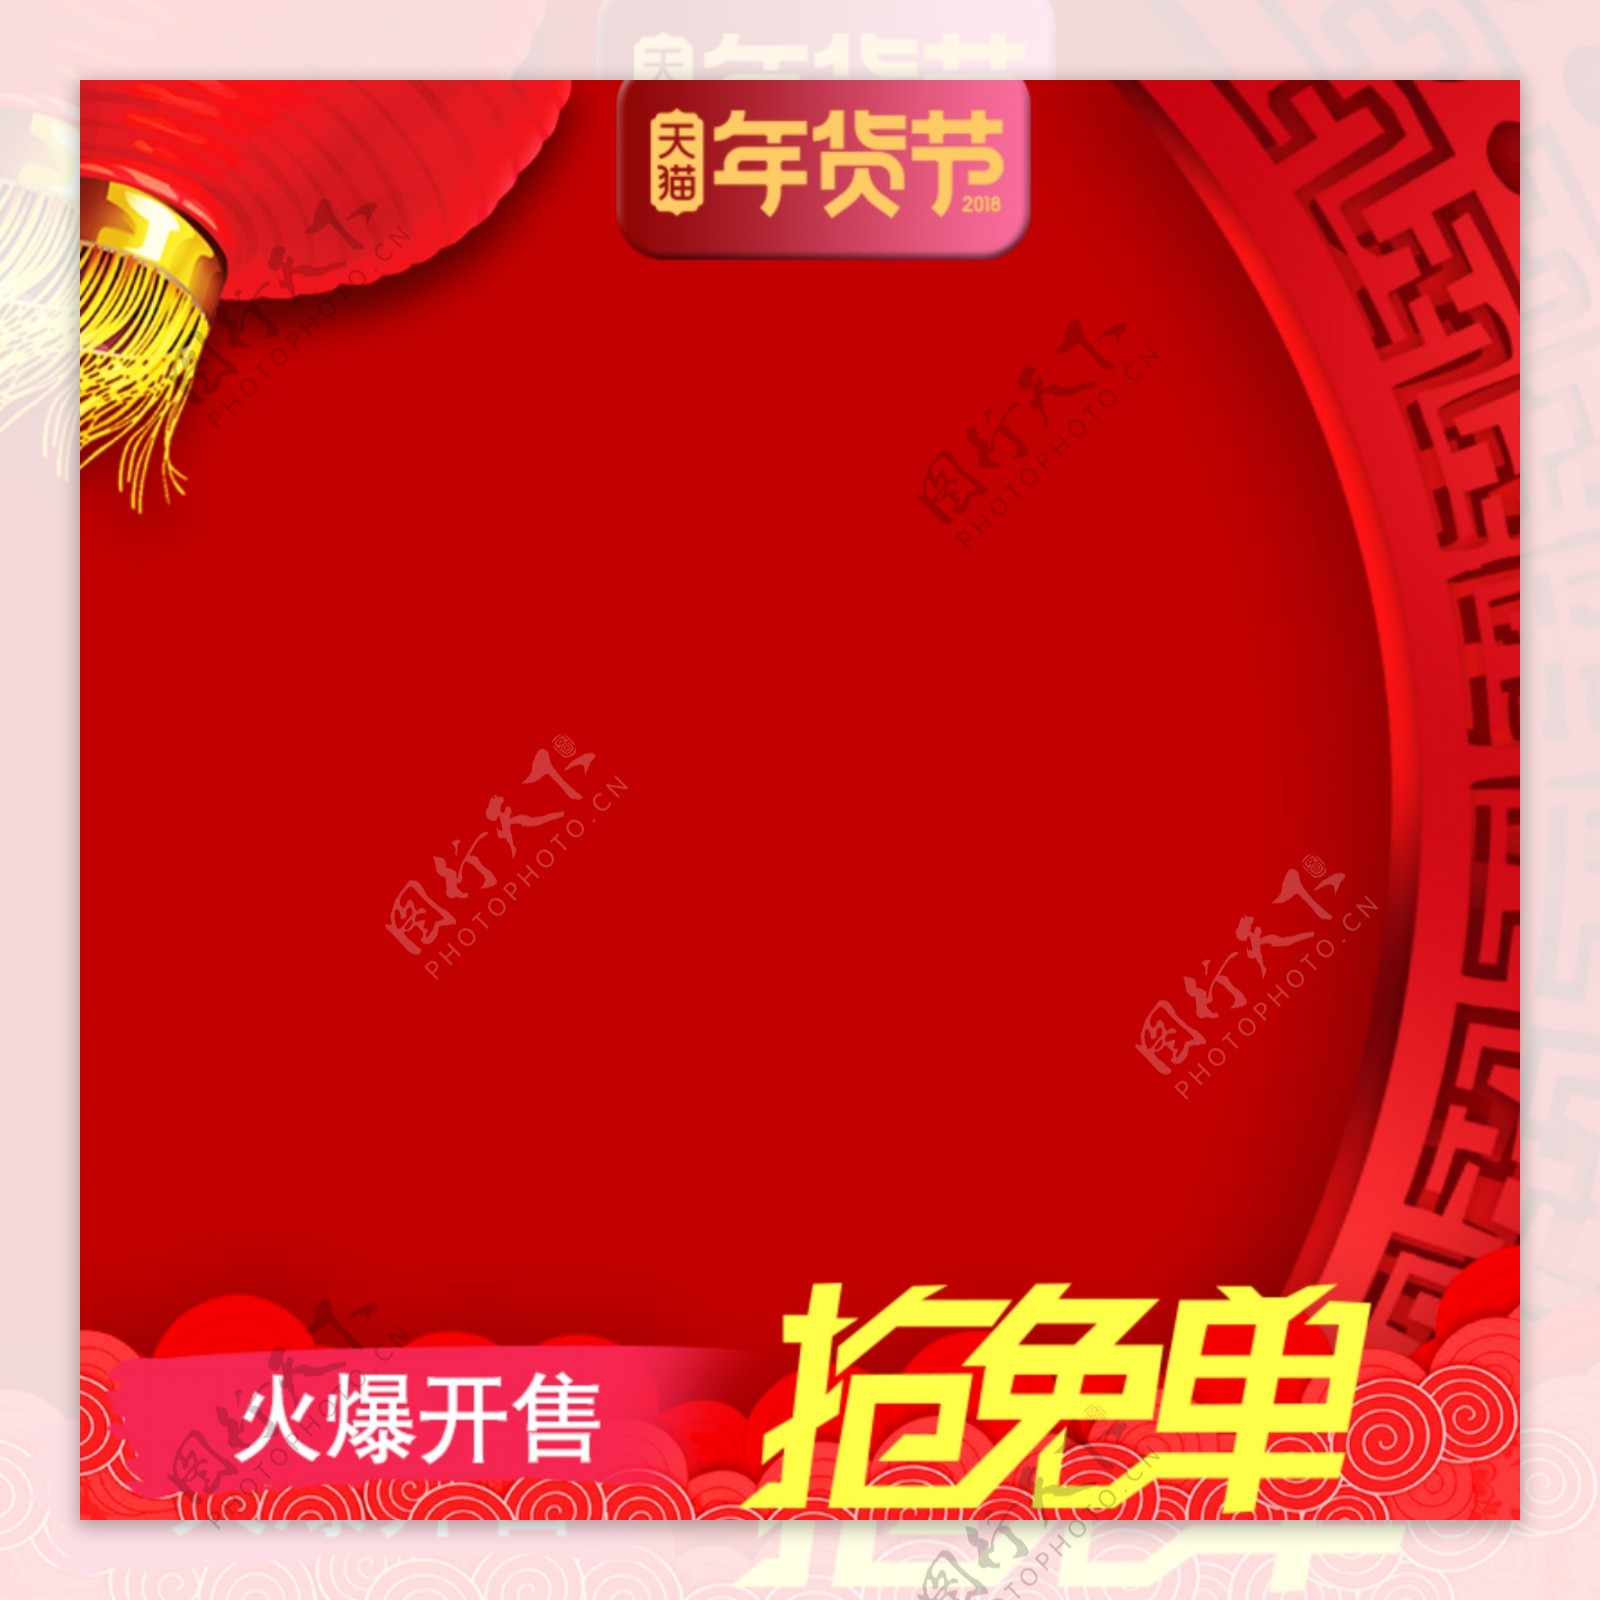 大红色创意中国元素年货节抢免单活动主图